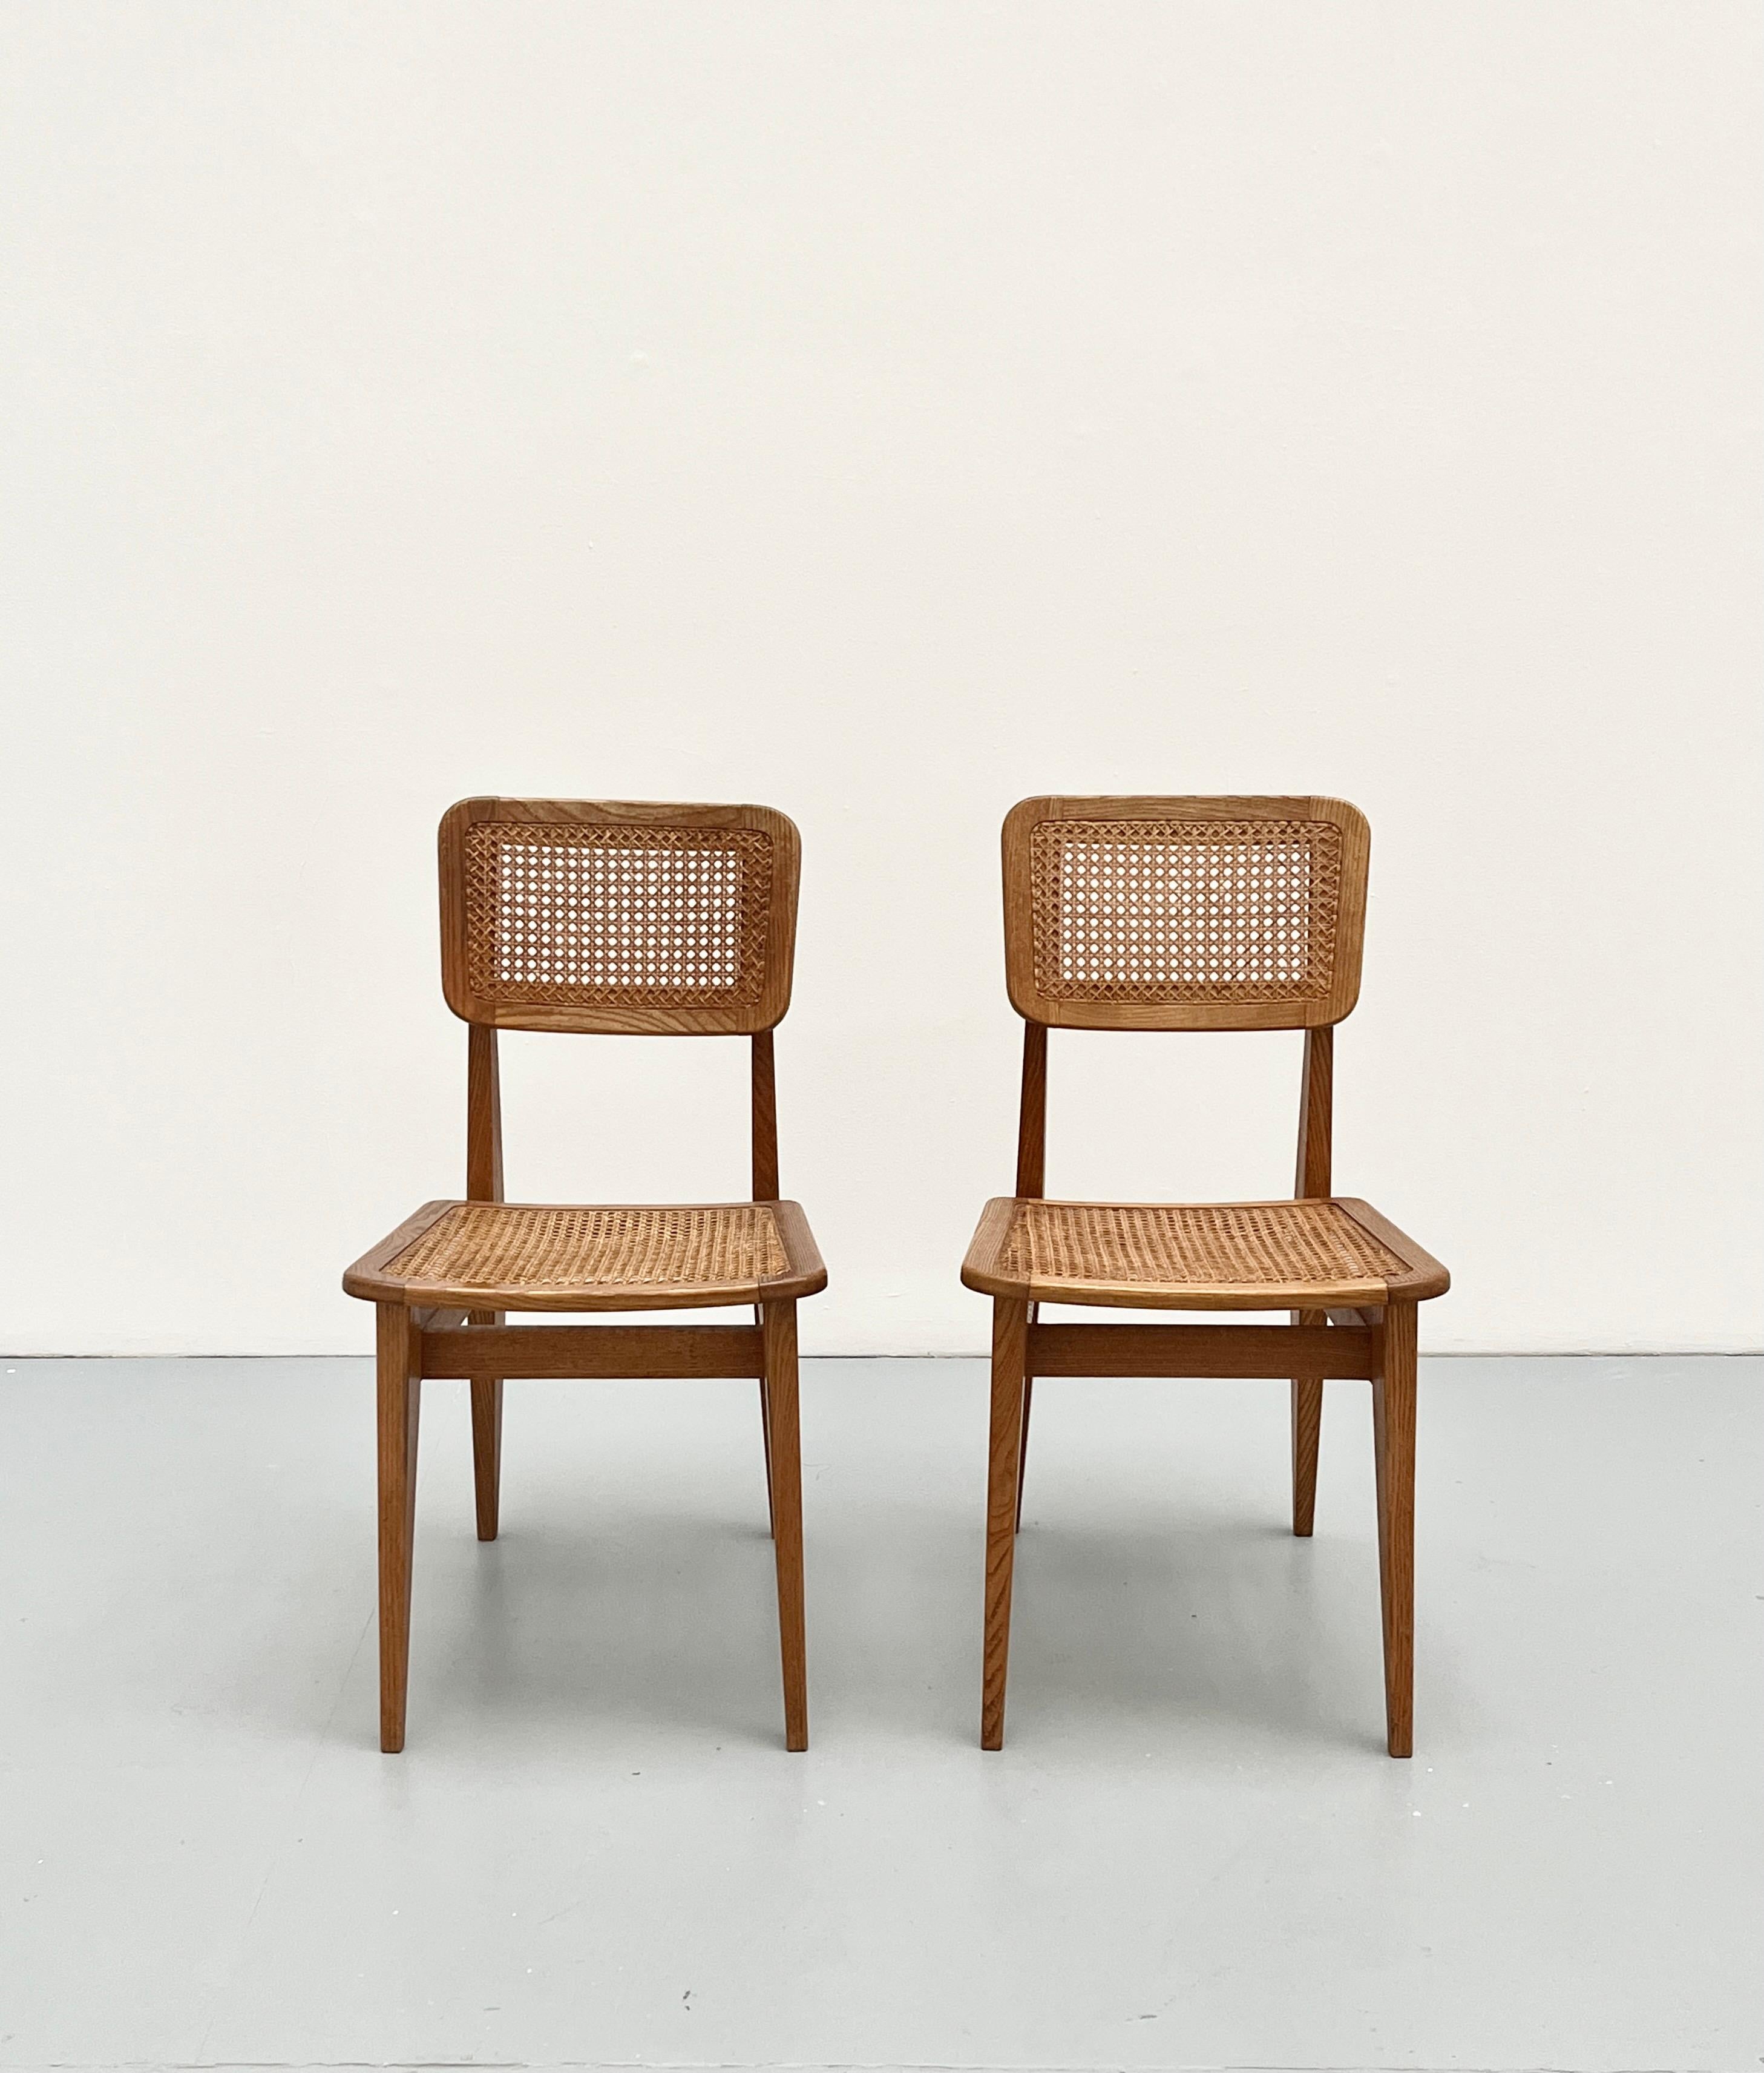 Nous présentons 2 chaises, mais nous en avons 6 de disponibles.
Marcel Gascoin, né le 24 août 1907 au Havre et mort le 27 octobre 1986 à Paris 13e1, est un décorateur spécialisé dans le 